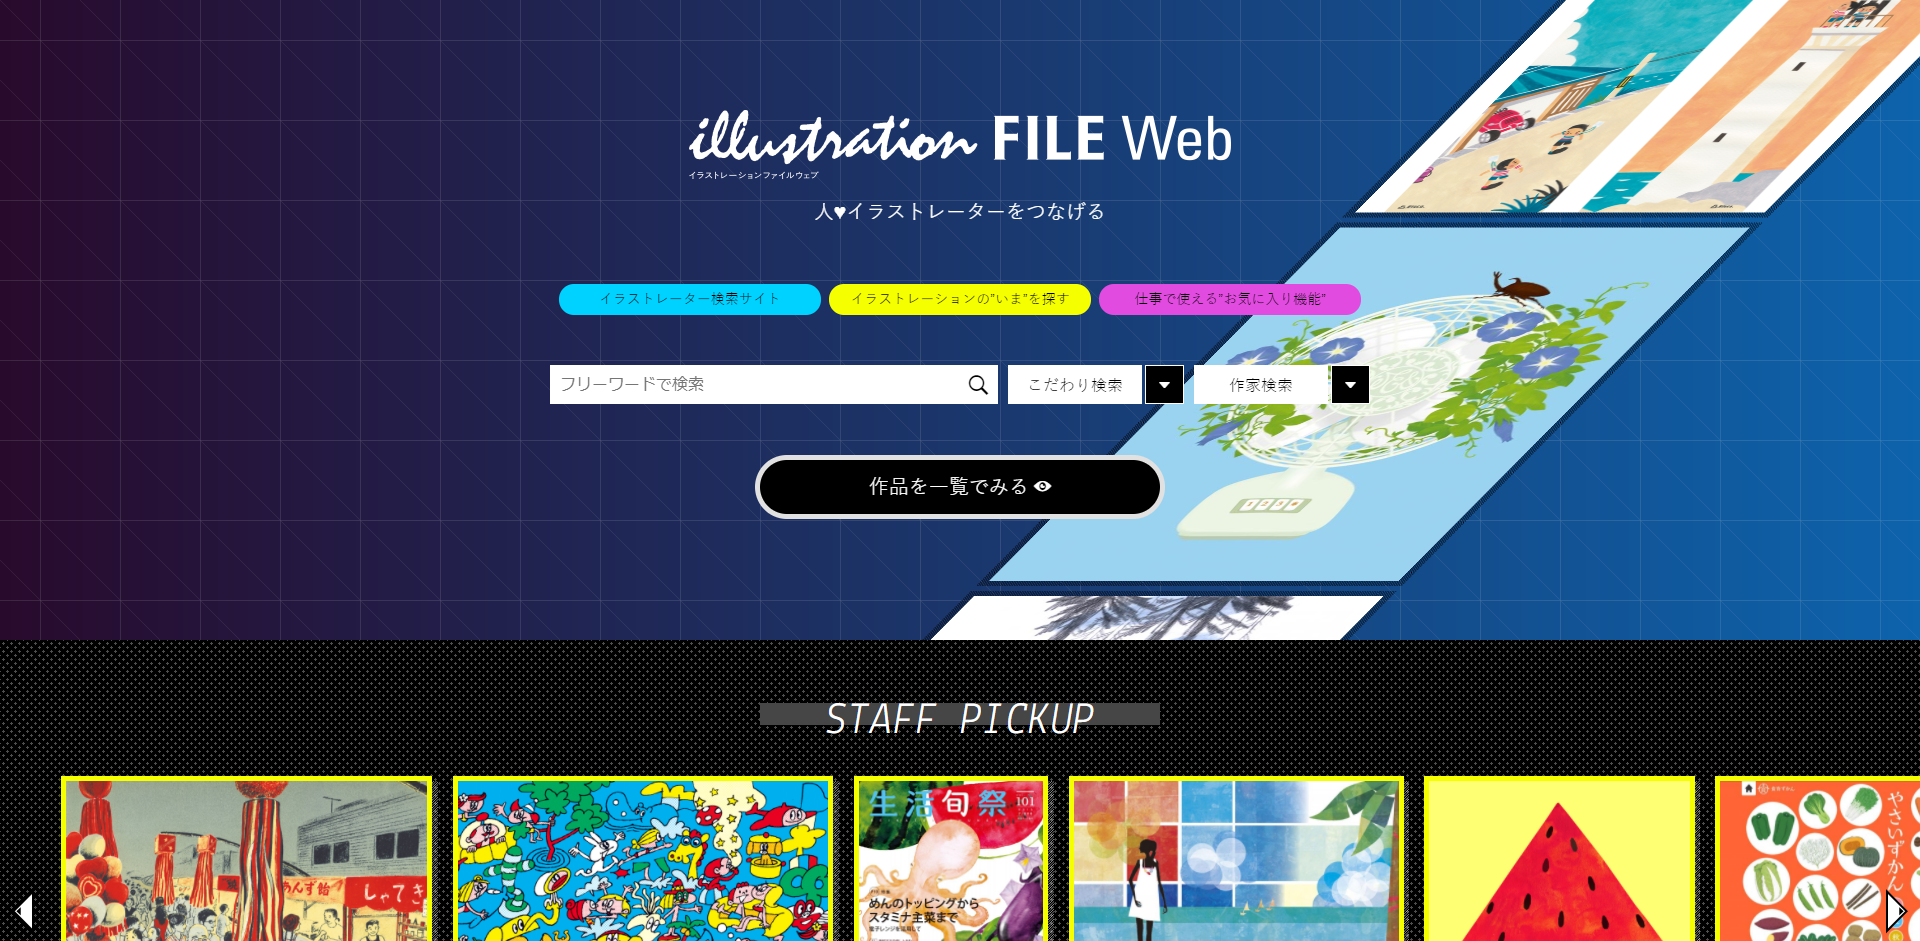 「イラストレーションファイルWeb」の公式サイト